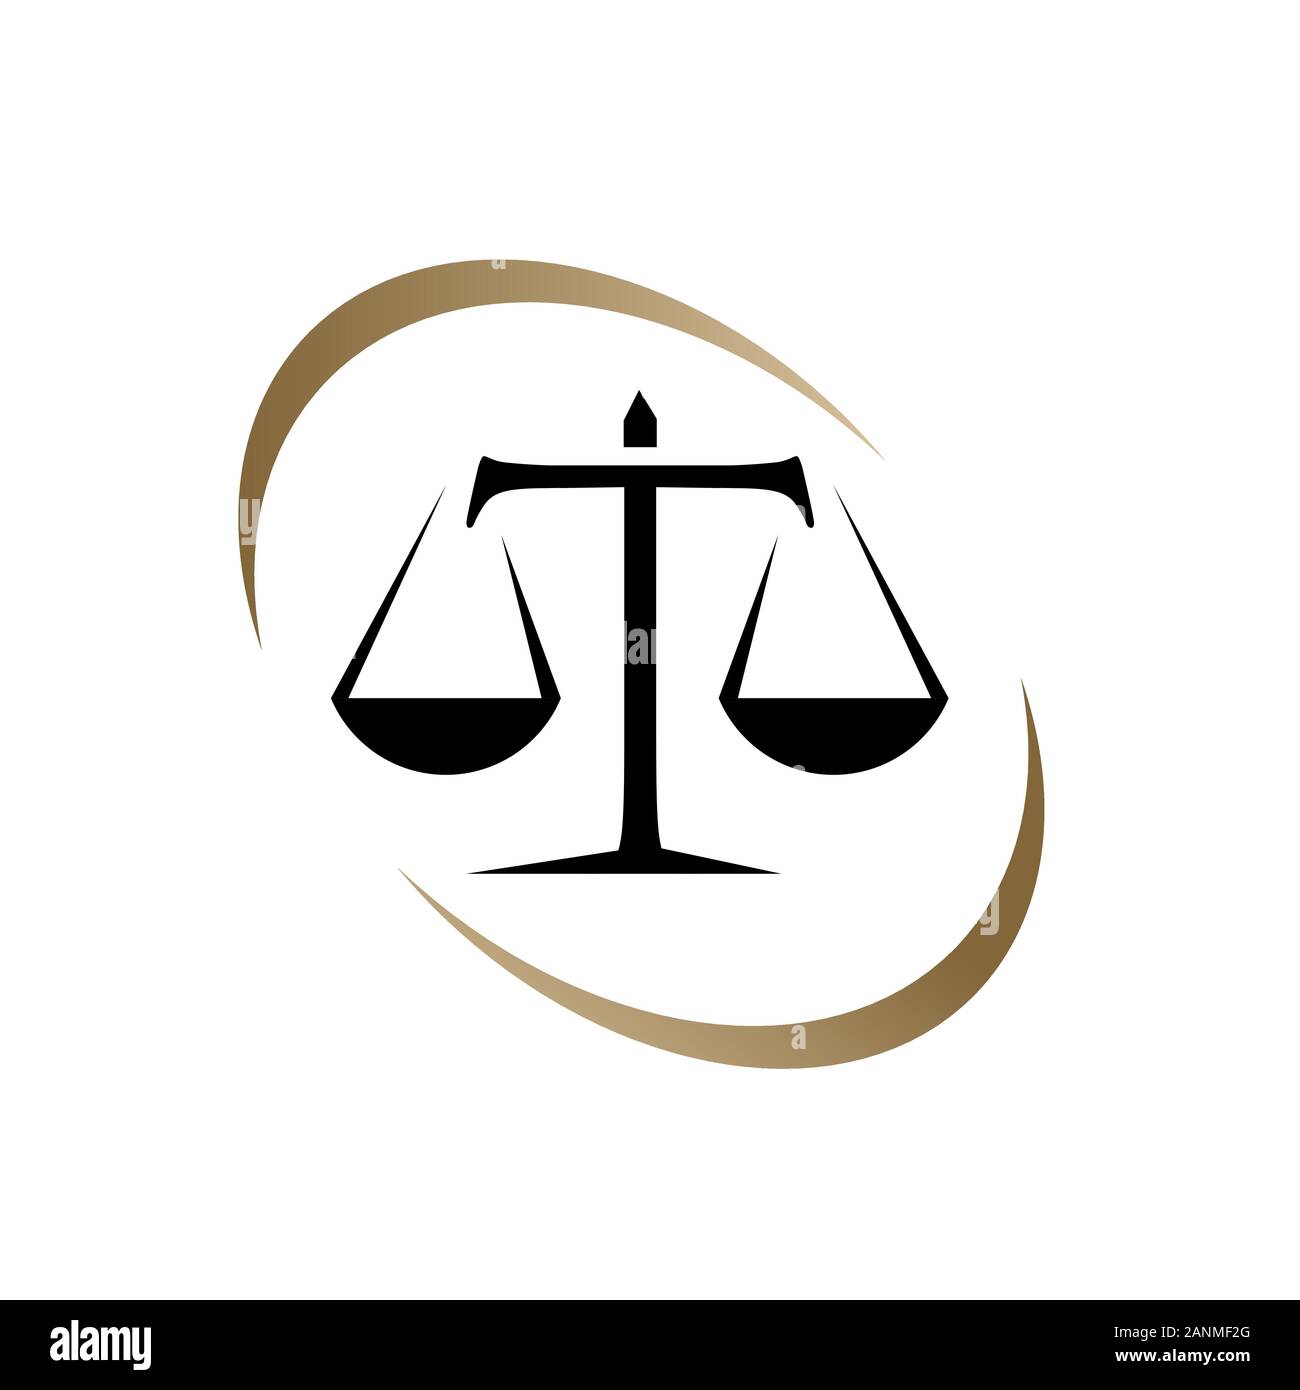 Waage der Gerechtigkeit Logo Design Vektor für Recht und Rechtsanwalt lirm Law Office Dienstleistungen Stock Vektor